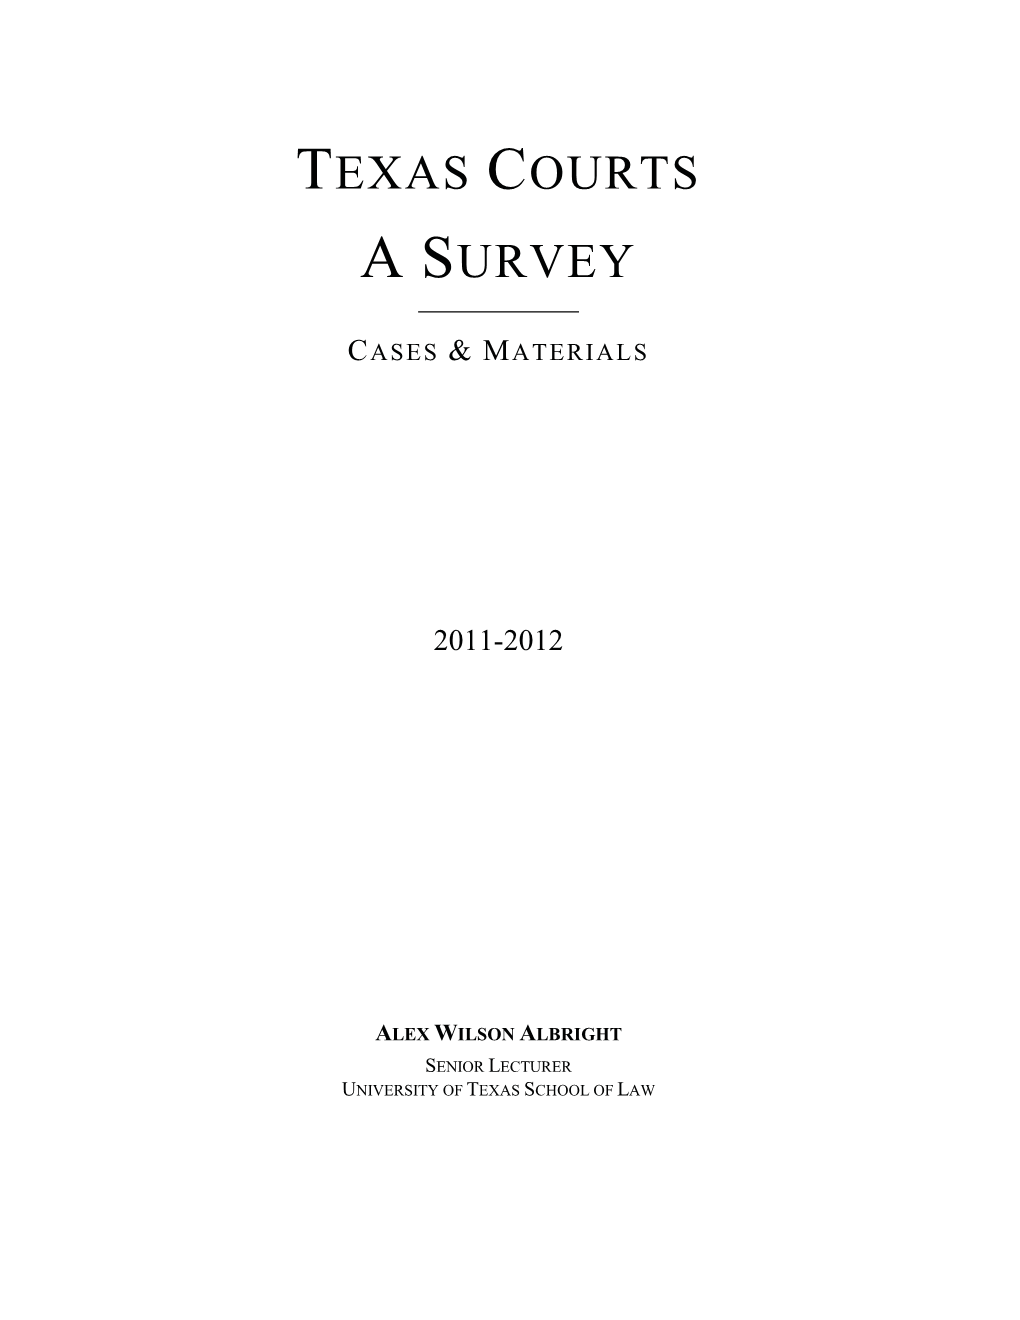 Texas Courts a Survey